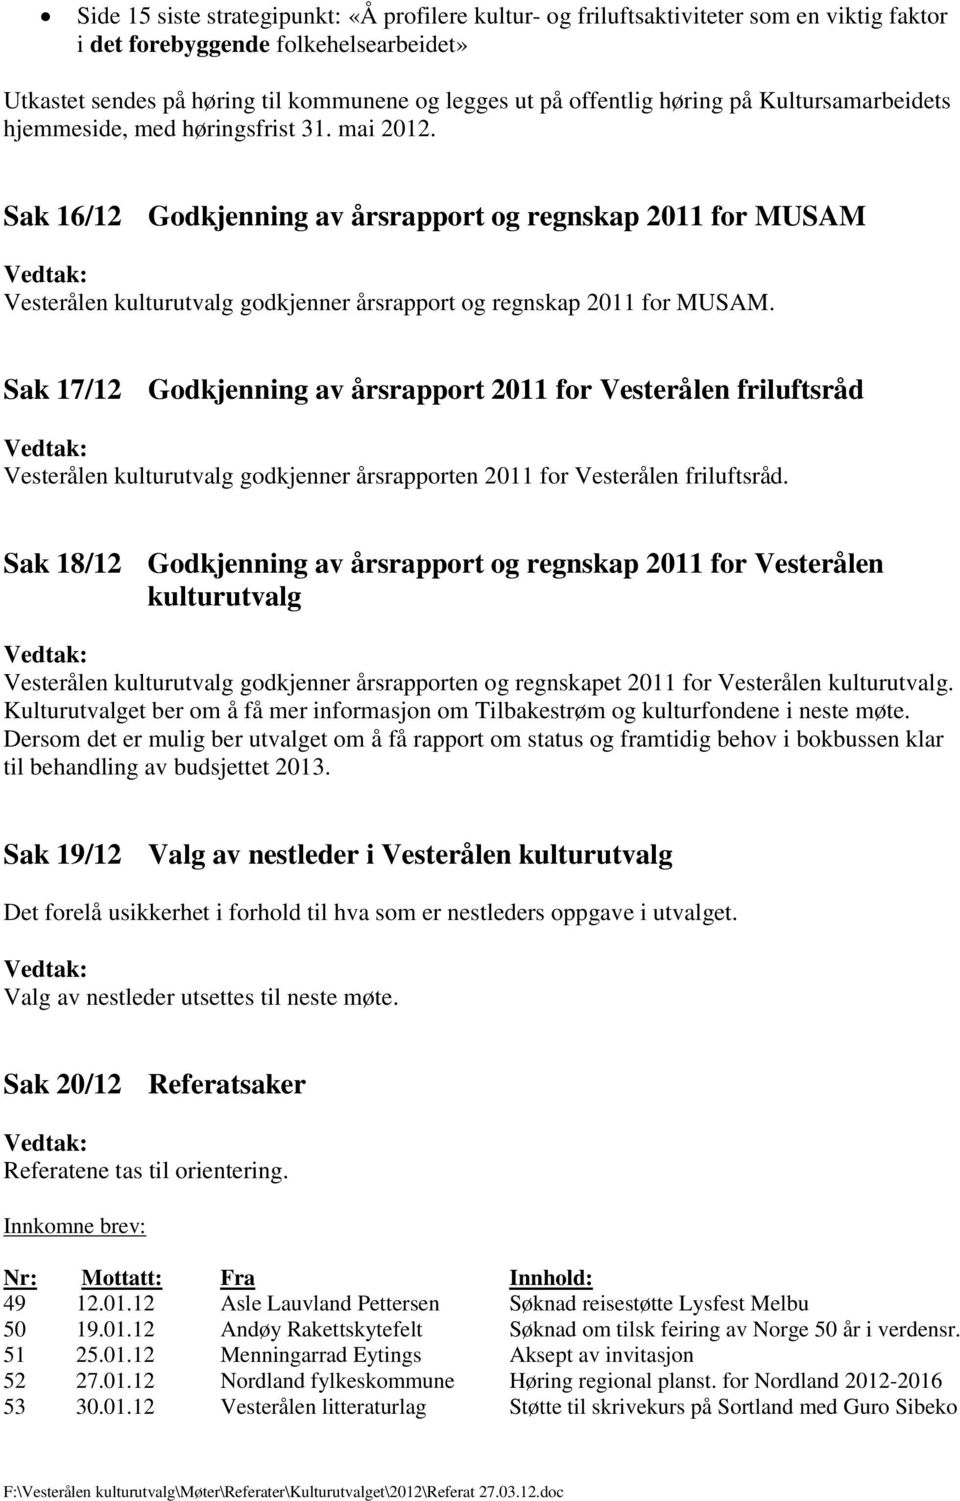 Sak 16/12 Godkjenning av årsrapport og regnskap 2011 for MUSAM Vesterålen kulturutvalg godkjenner årsrapport og regnskap 2011 for MUSAM.